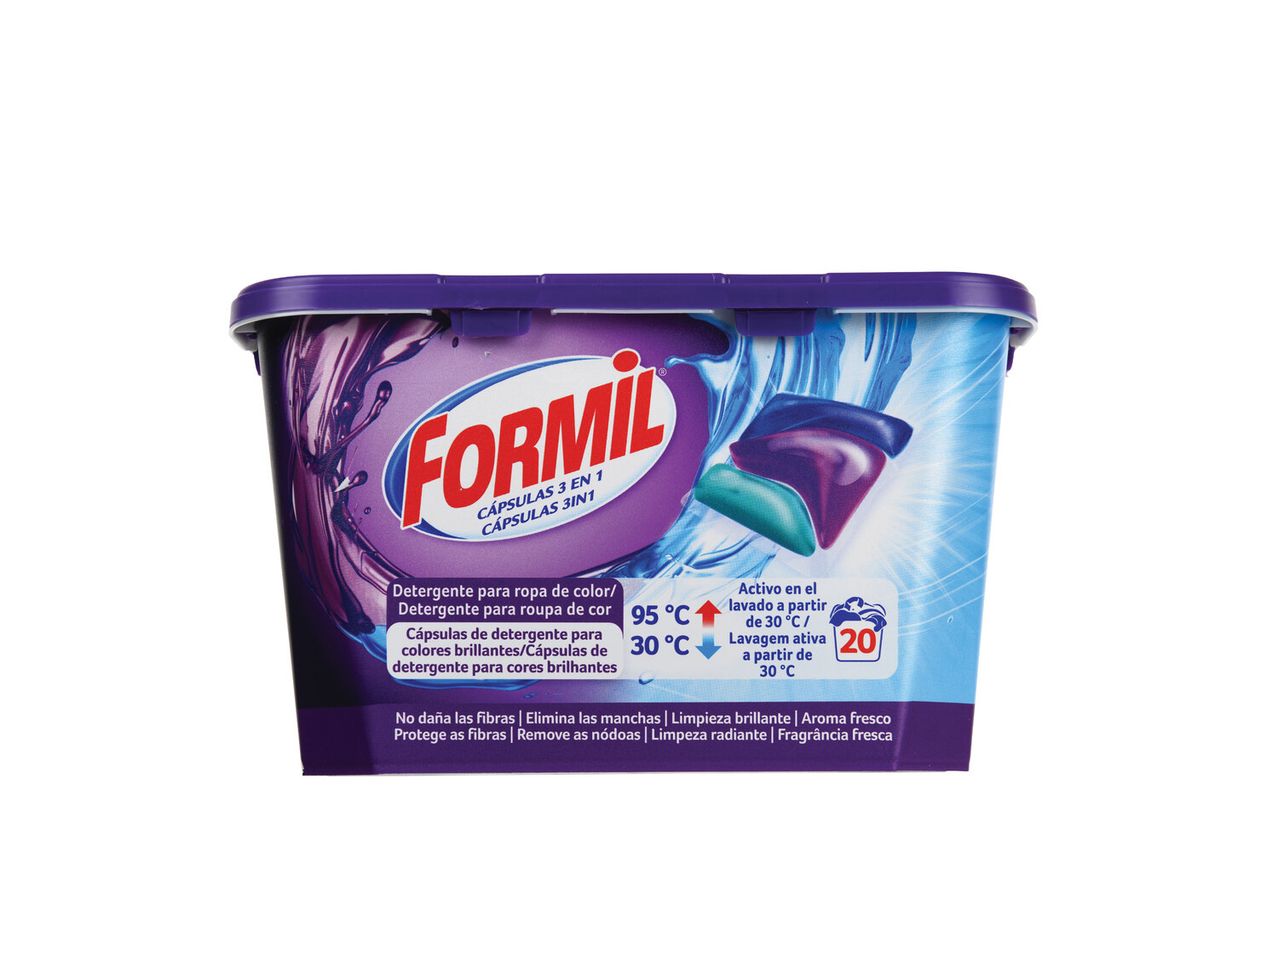 Ver empliada: Formil® Detergente para Roupa 3 em 1 - Imagem 2